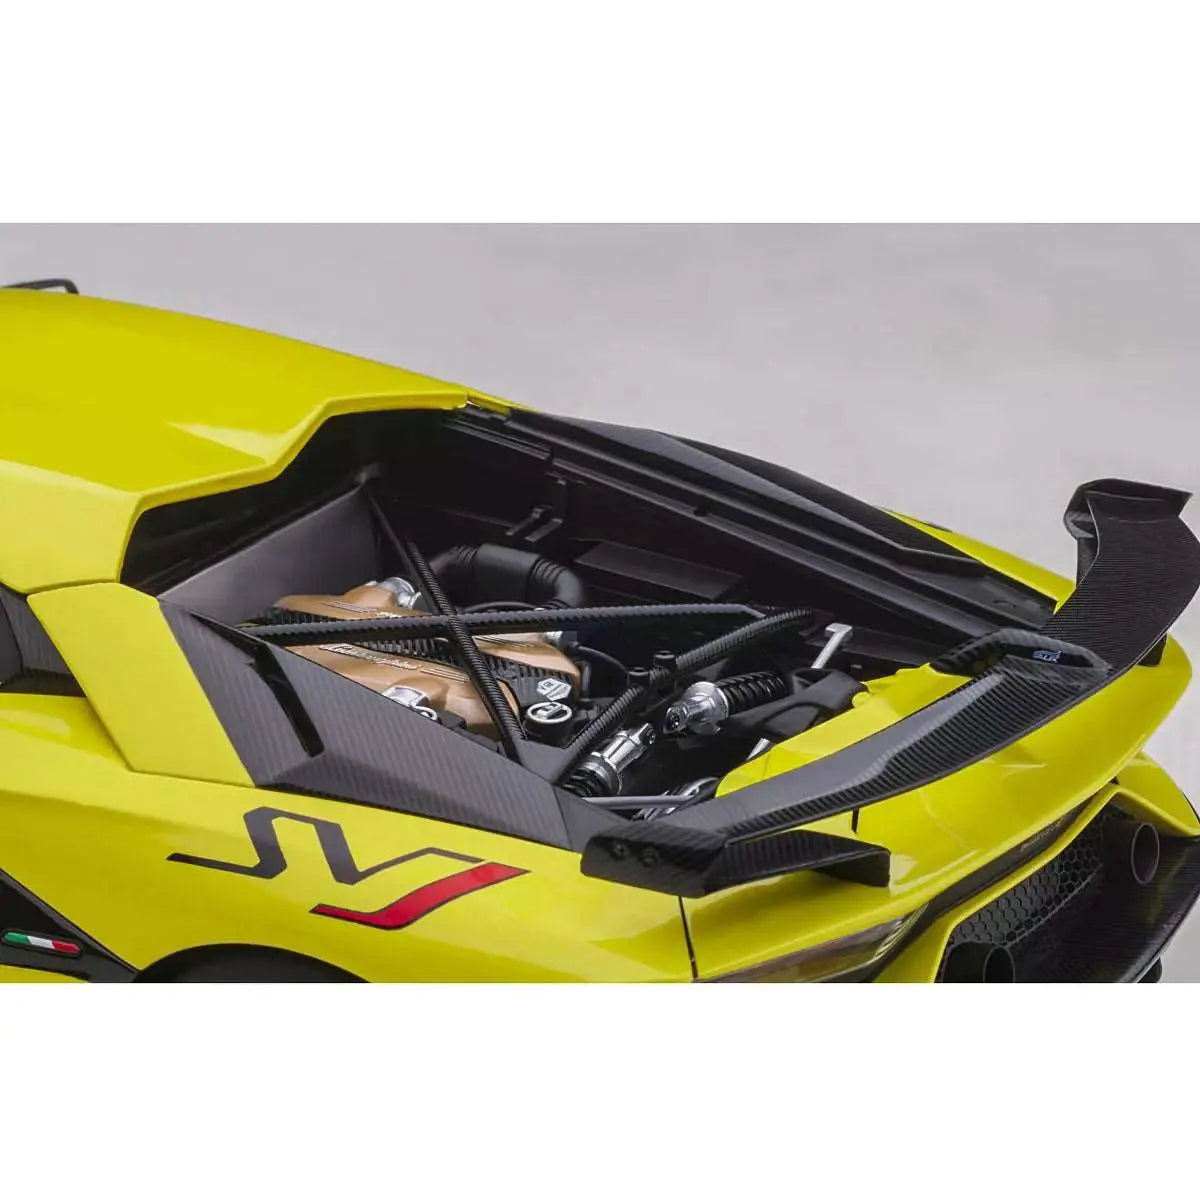 1:18 SCALE Lamborghini Aventador SVJ